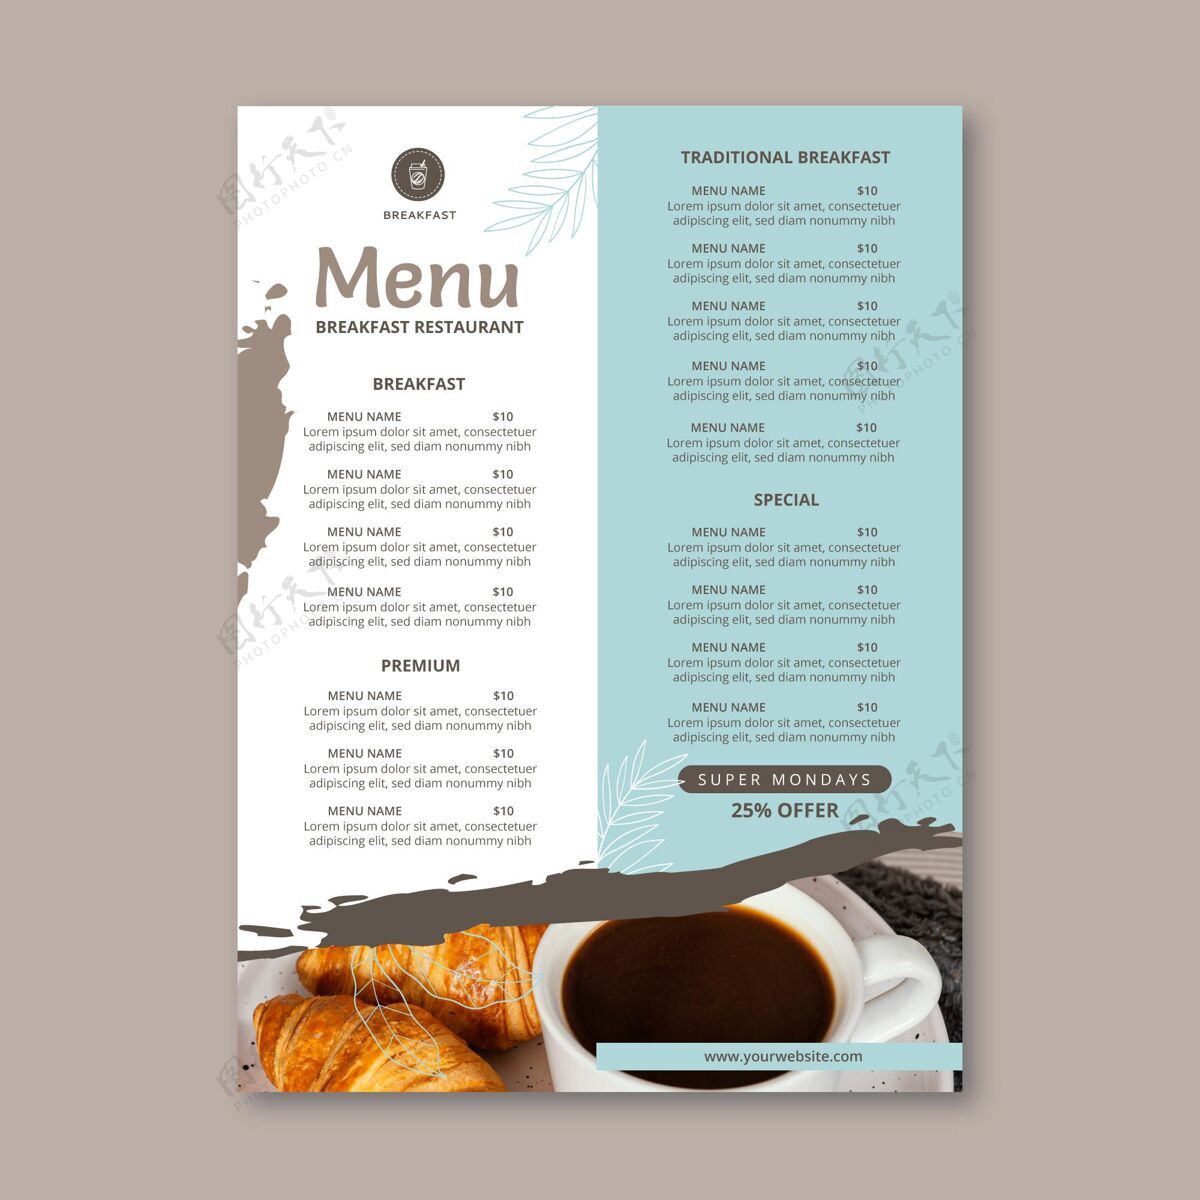 早餐早餐餐厅菜单模板小餐馆即食印刷品餐厅早餐